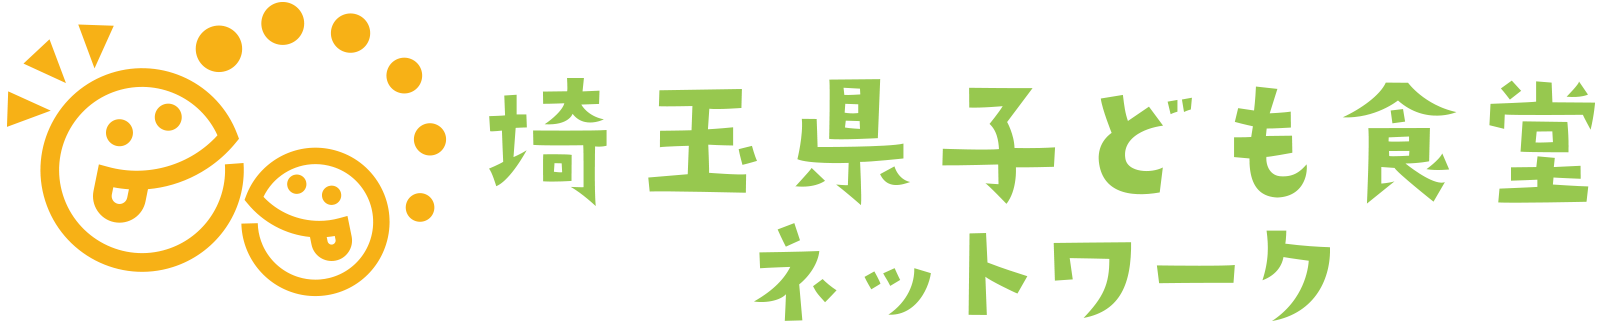 埼玉県子ども食堂ネットワーク